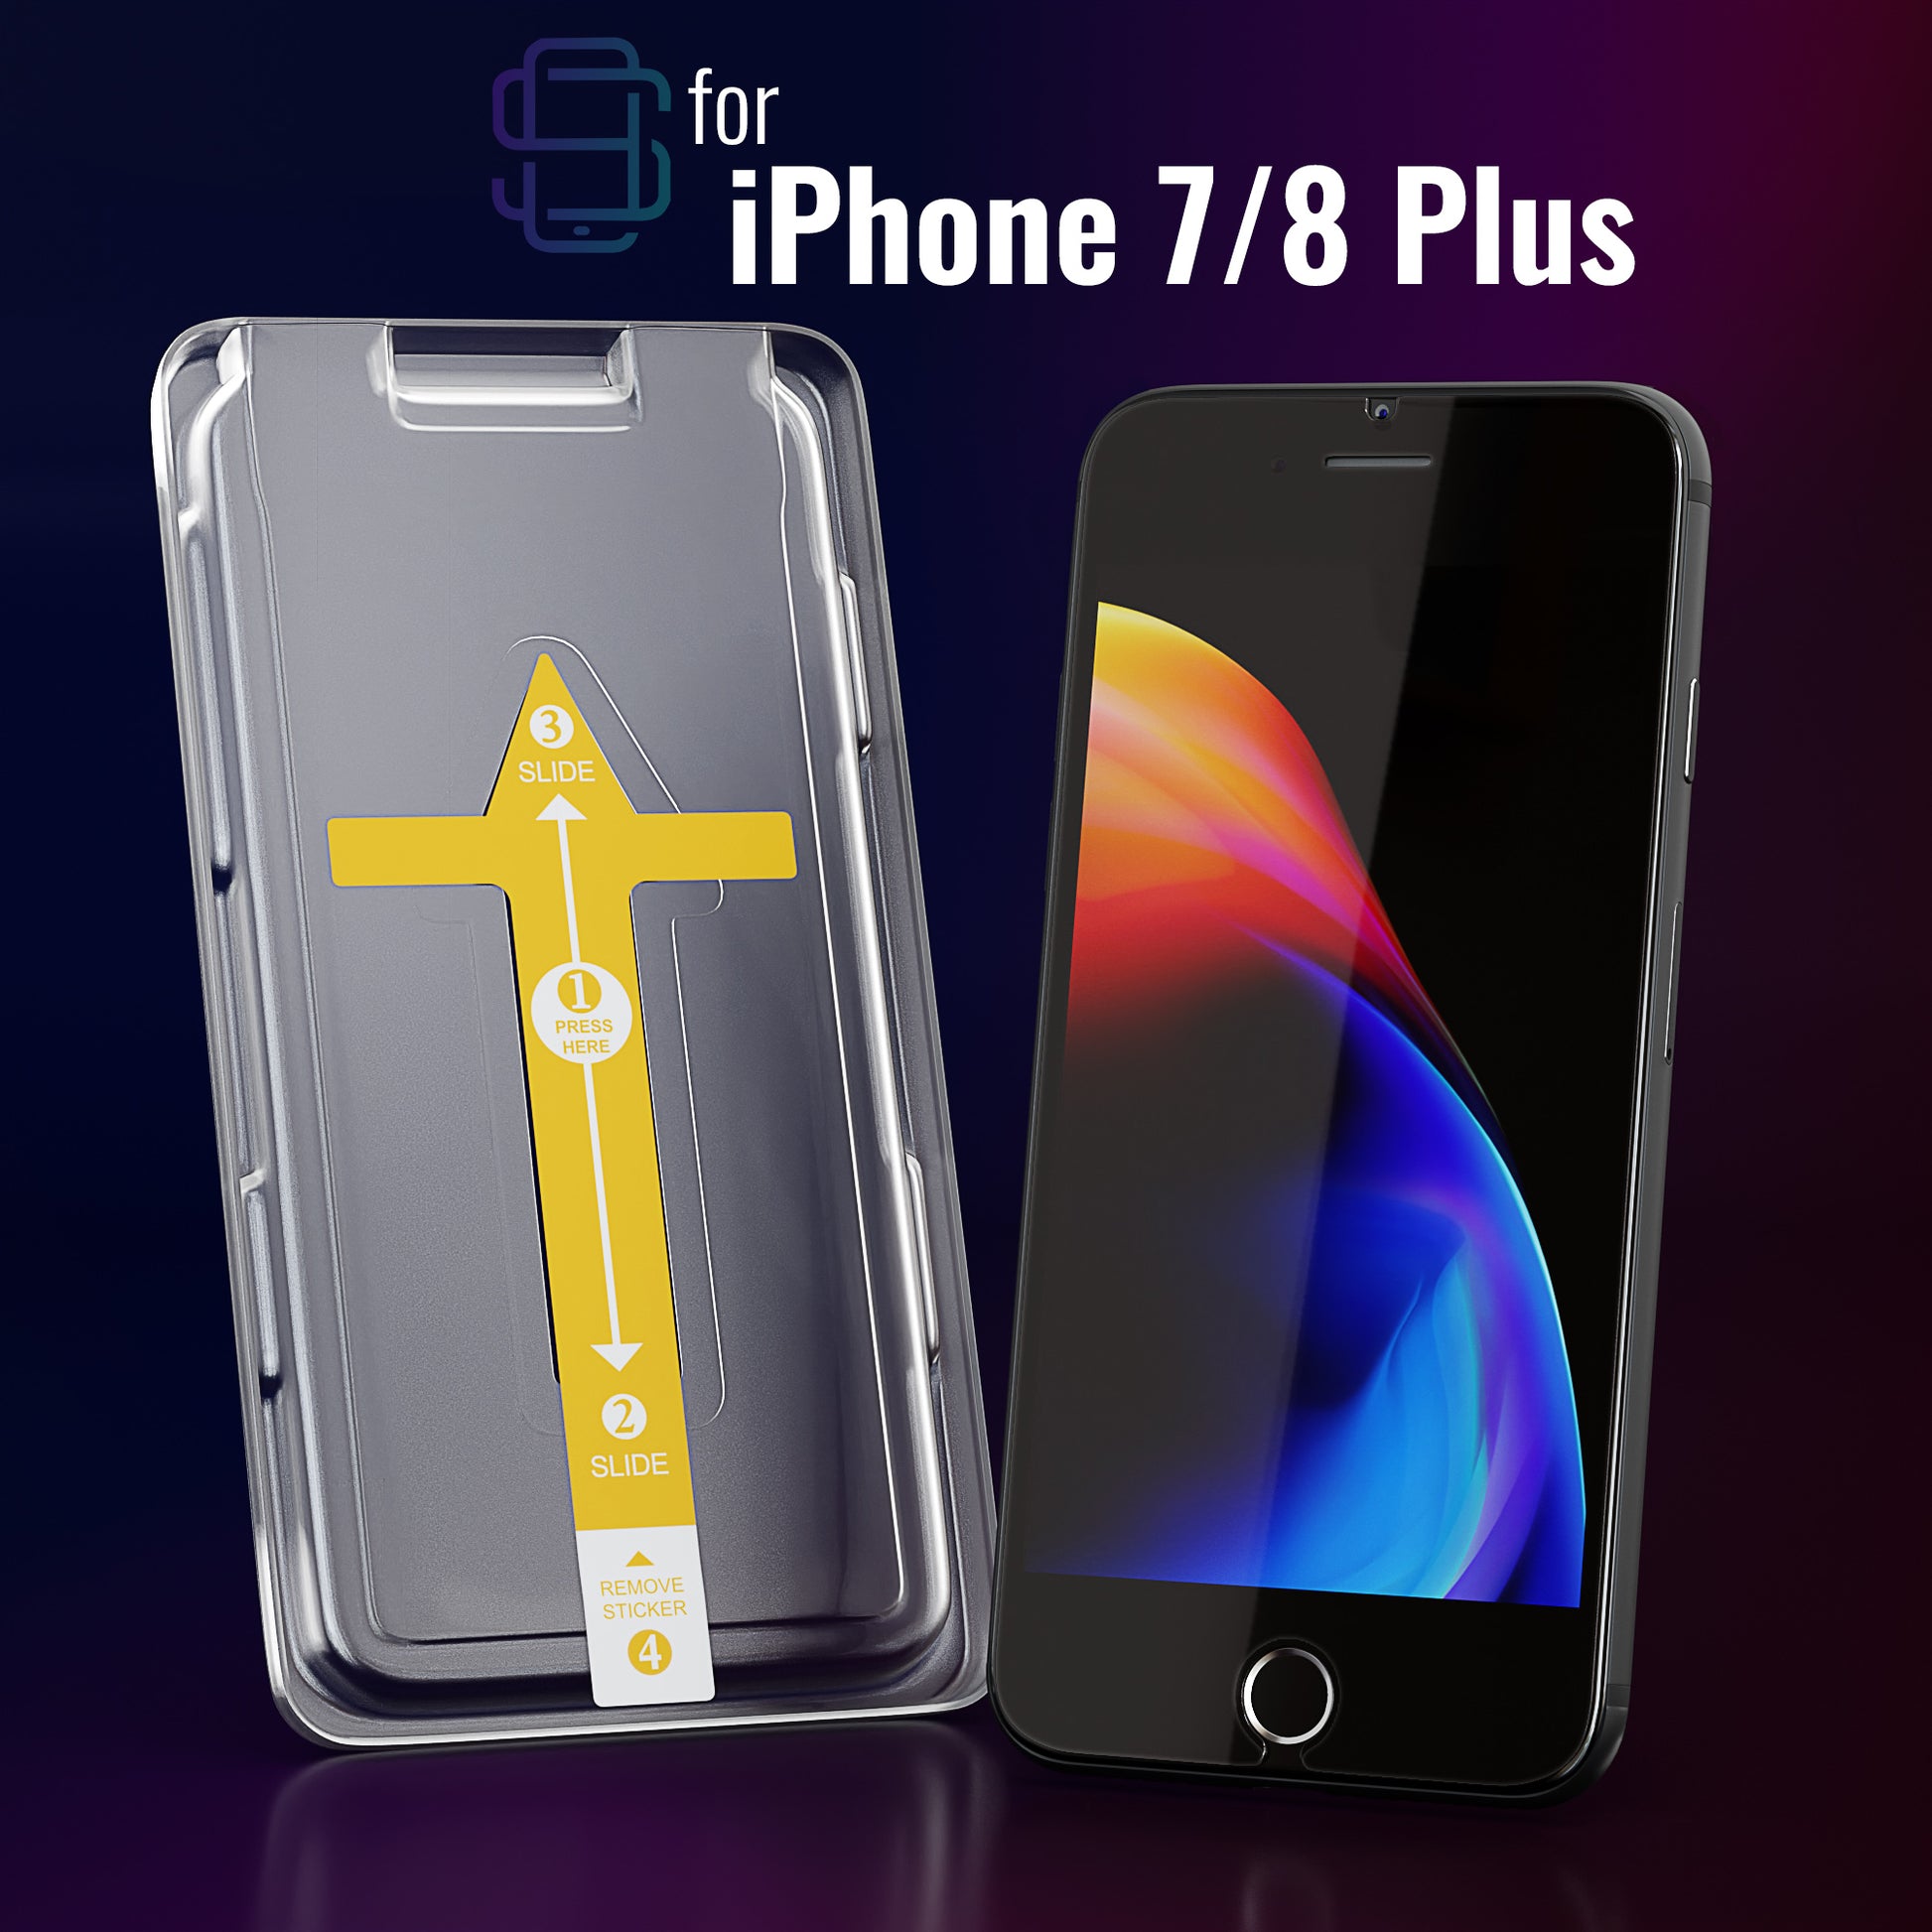  Defenslim Protector de pantalla para iPhone 8/7 Plus (paquete  de 2) con kit de instalación fácil de alinear automáticamente, vidrio  templado para iPhone 8 Plus, 7 Plus (5,5 pulgadas), nuevo cristal